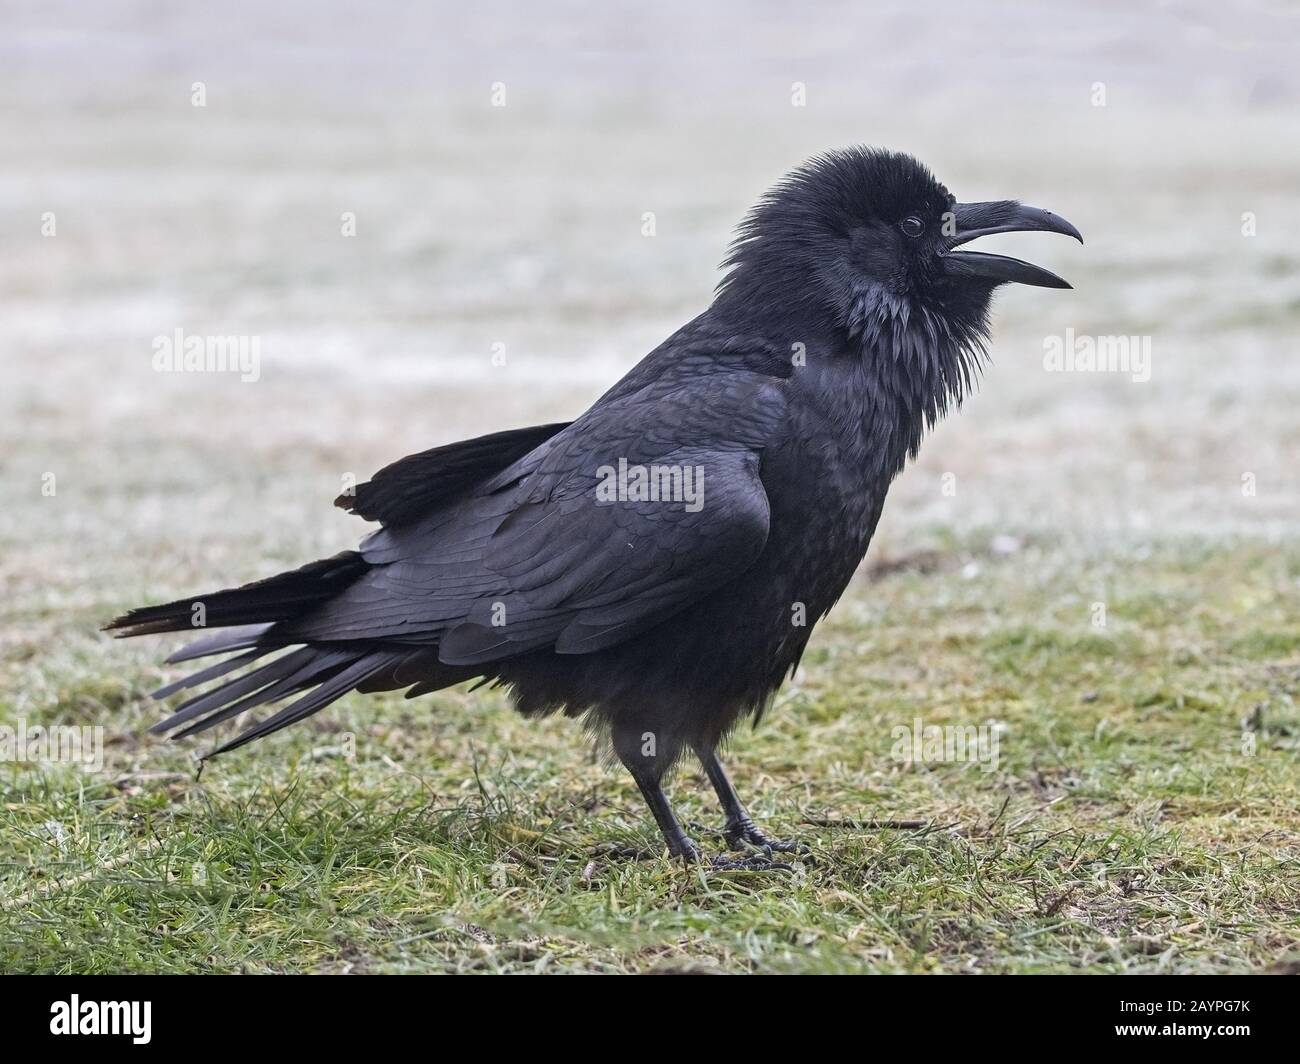 Common raven standing Stock Photo